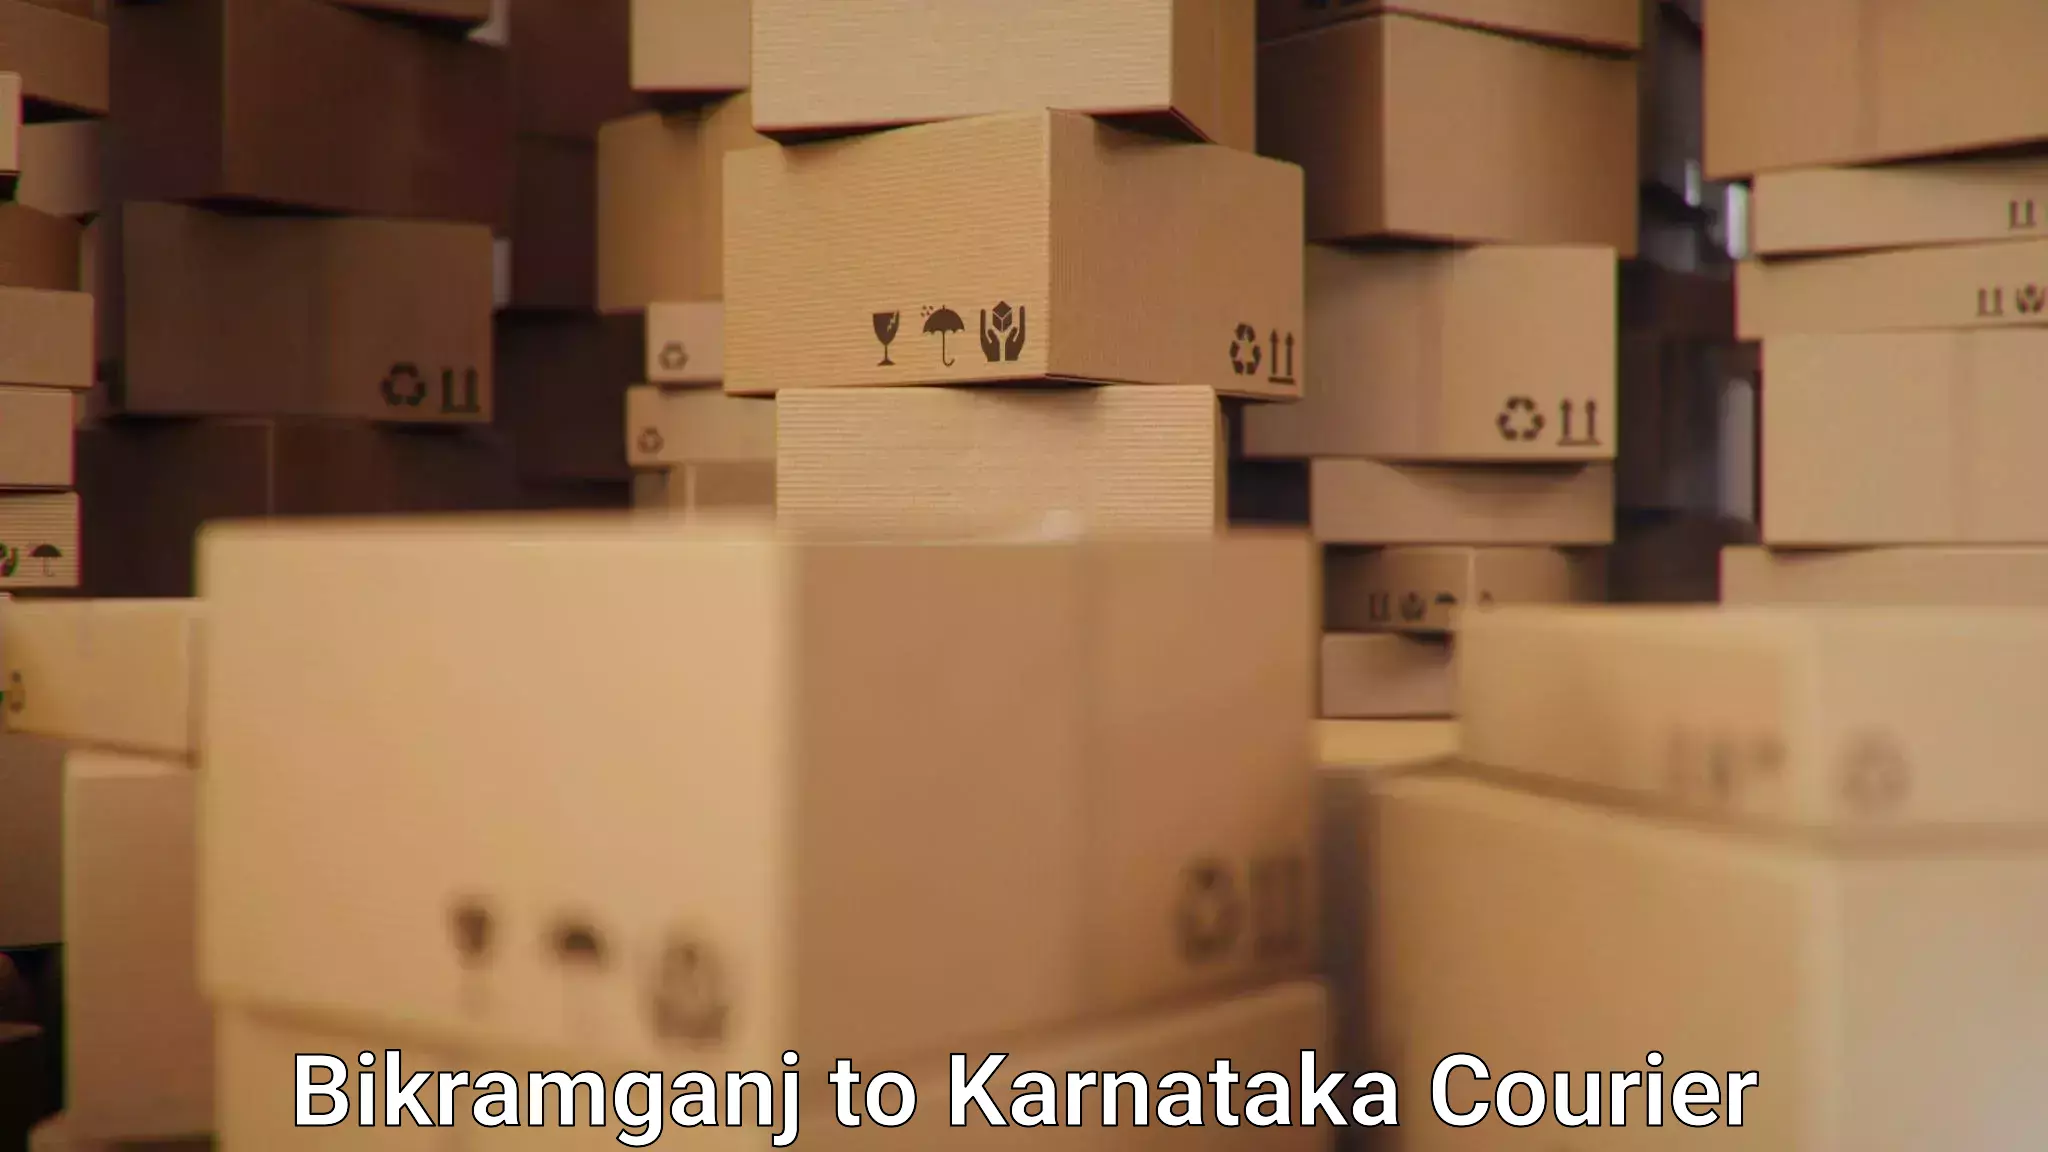 International courier networks Bikramganj to Channagiri